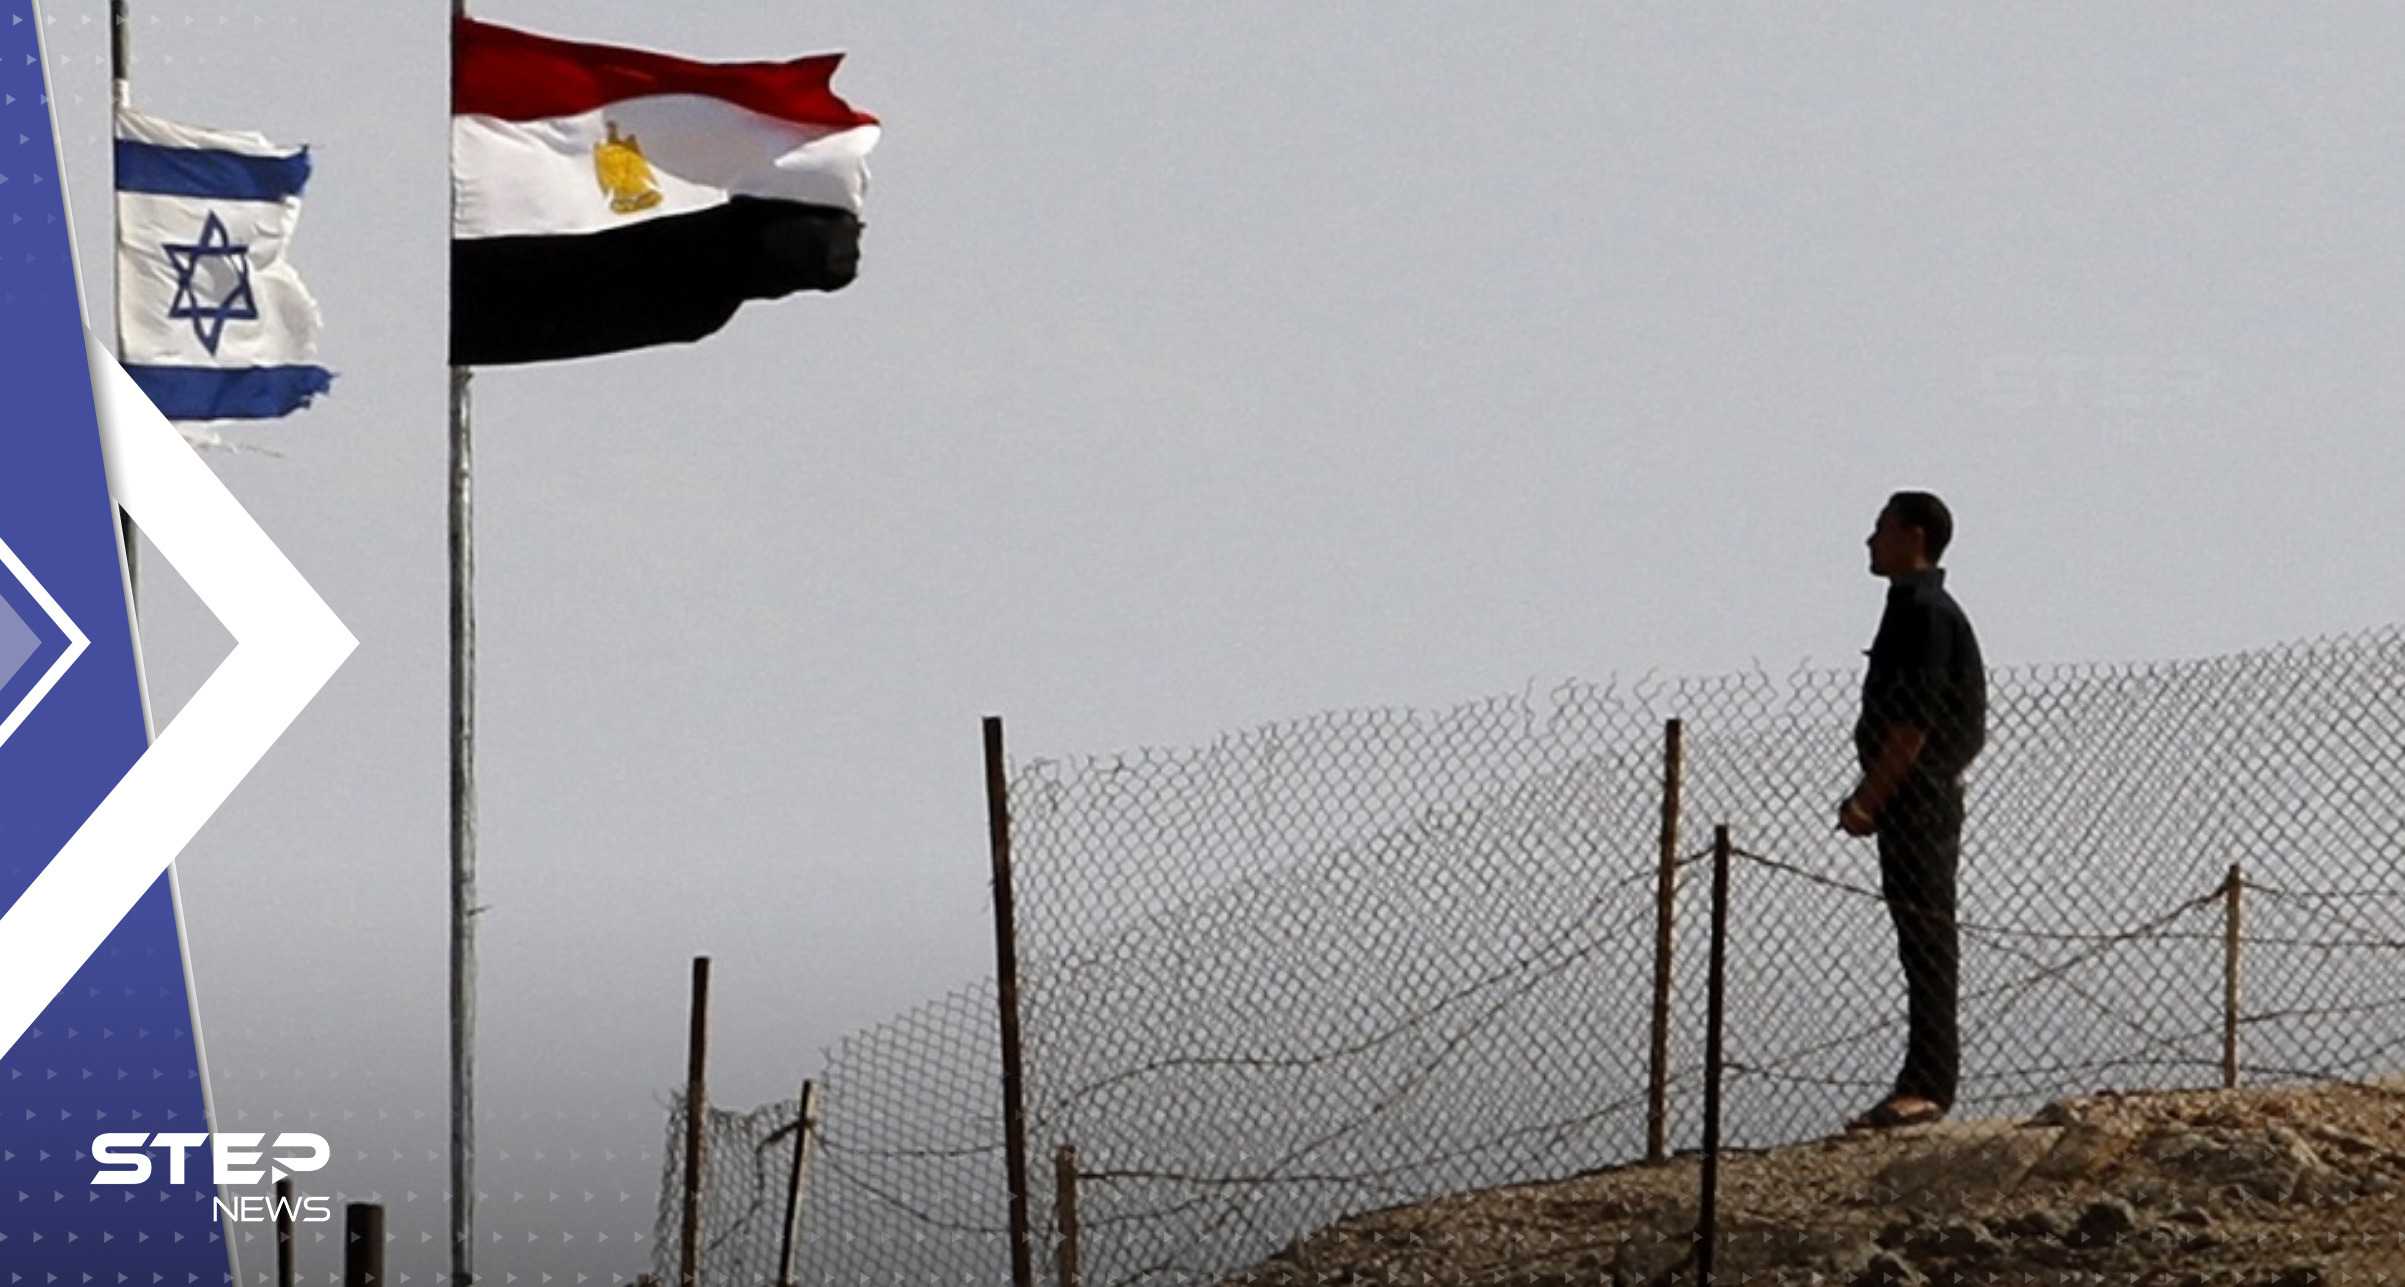 "الأشباح على حدود مصر".. إسرائيل تكشف عن وحدات قتالية خاصة أخفتها سابقاً